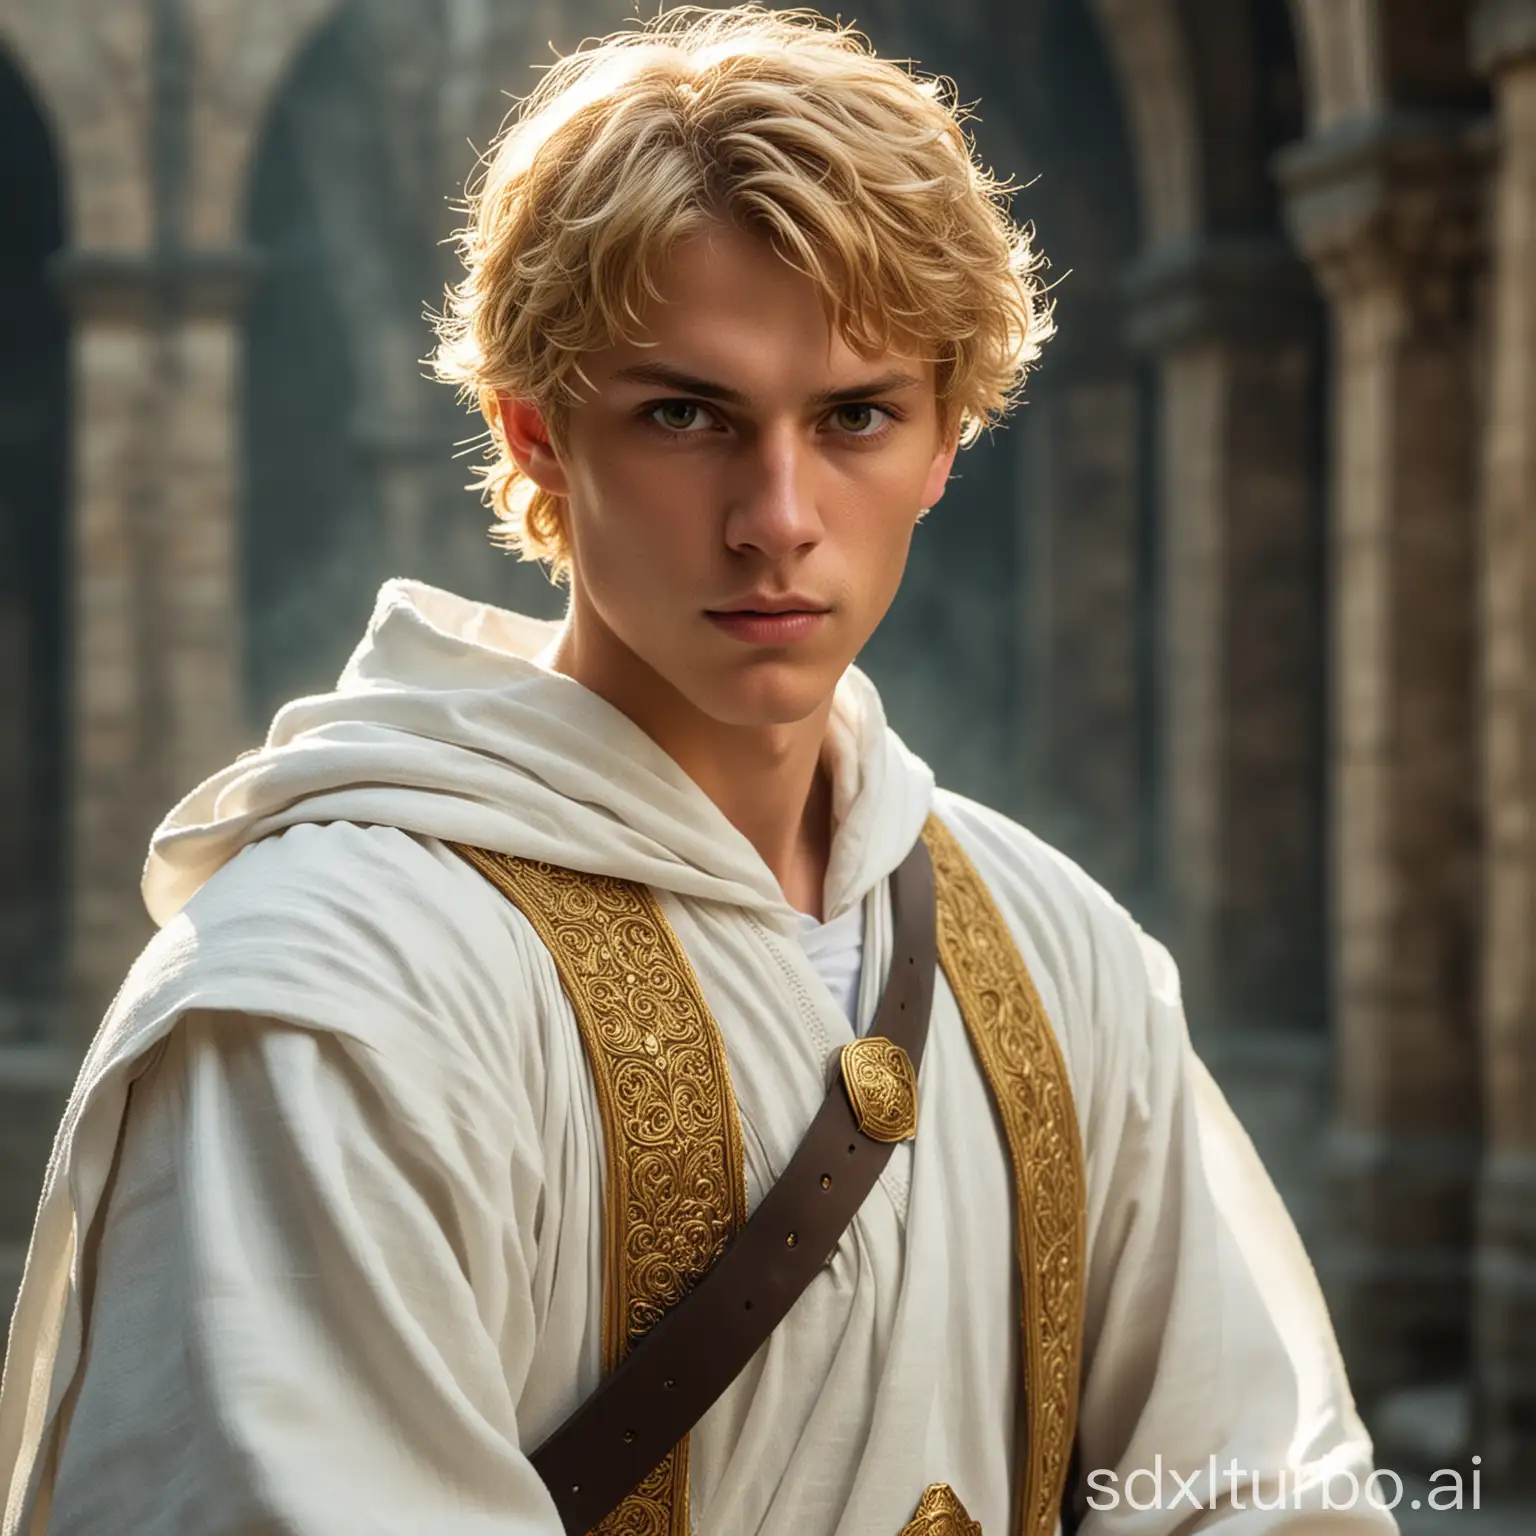 金色眼睛金色短发穿着白色长袍的中世纪男青年剑士

